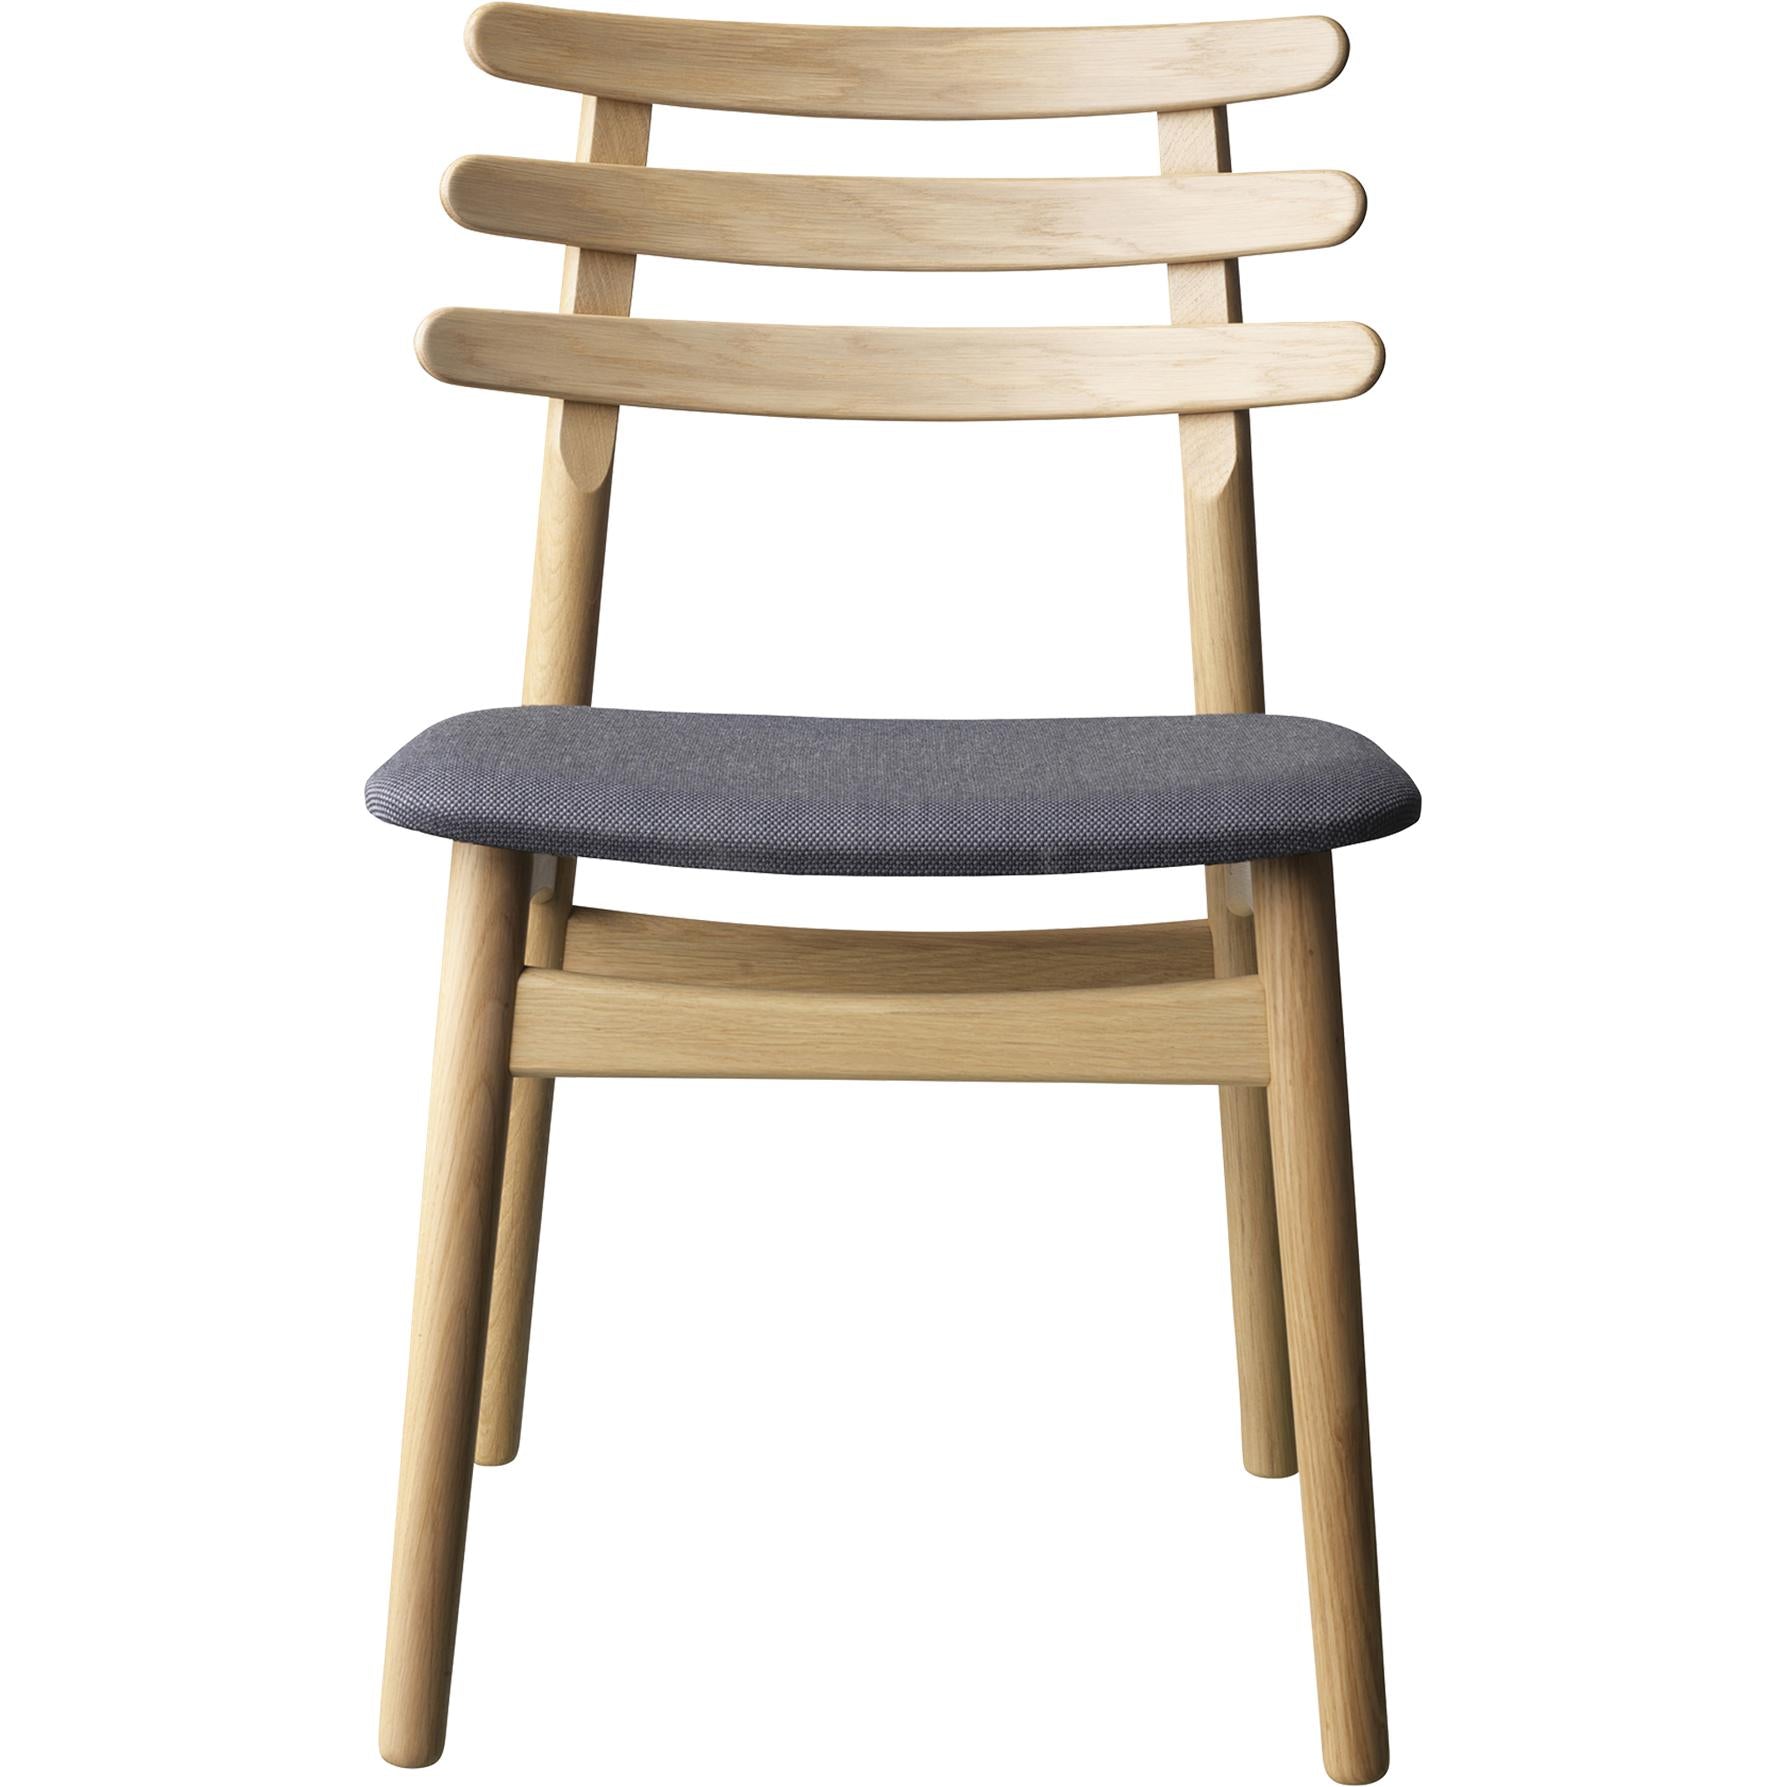 Fdb Møbler J48 eettafel stoel, eiken, antraciet textielstoel